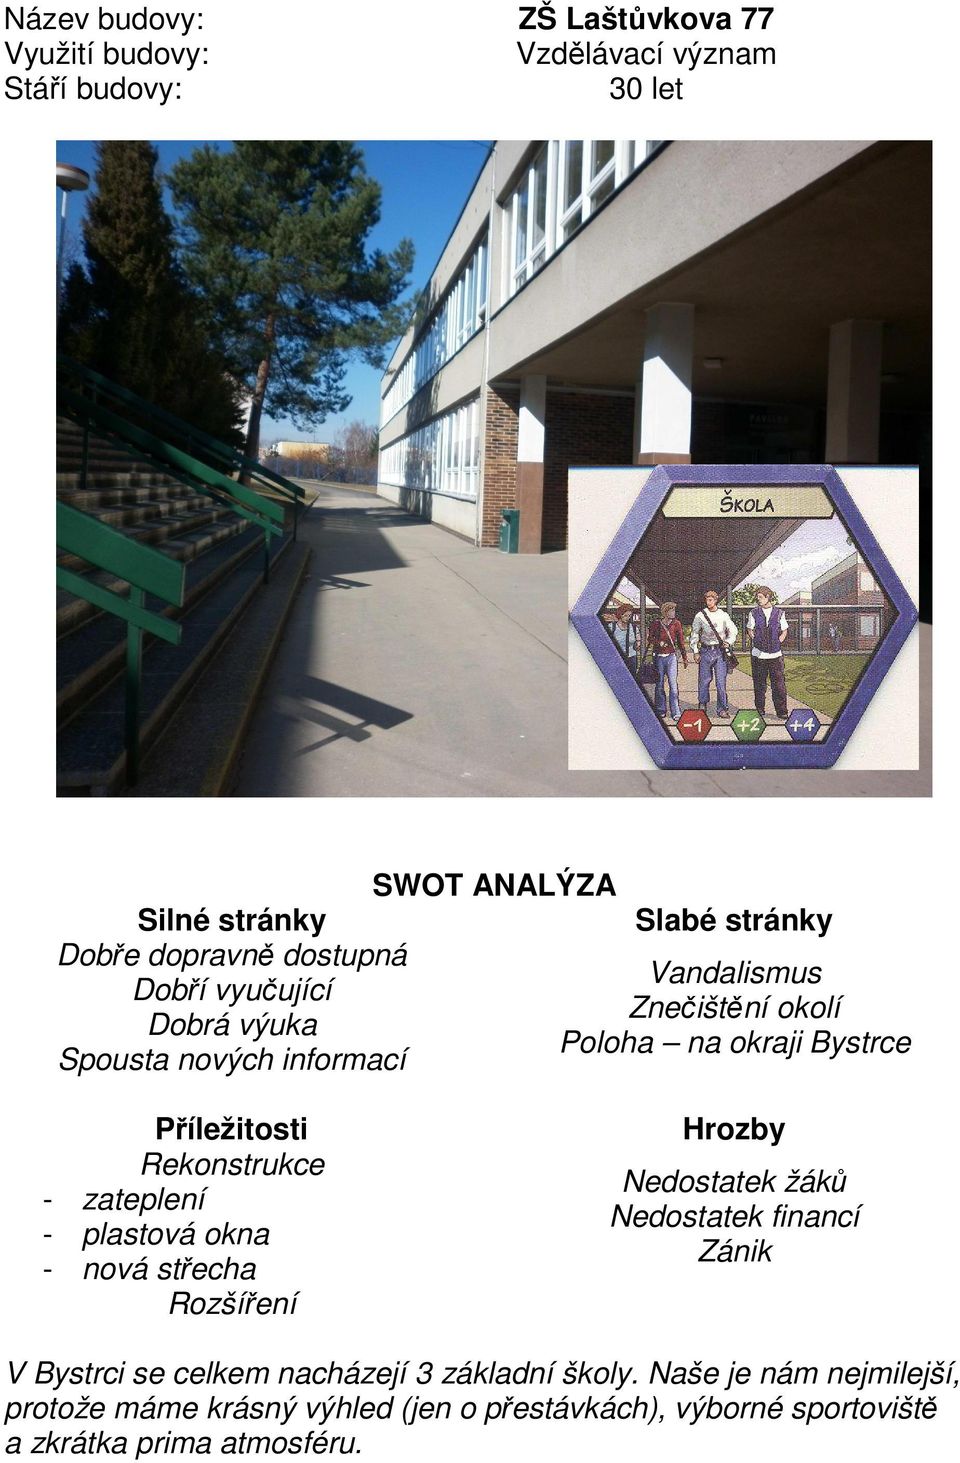 okna - nová střecha Rozšíření Nedostatek žáků Nedostatek financí Zánik V Bystrci se celkem nacházejí 3 základní